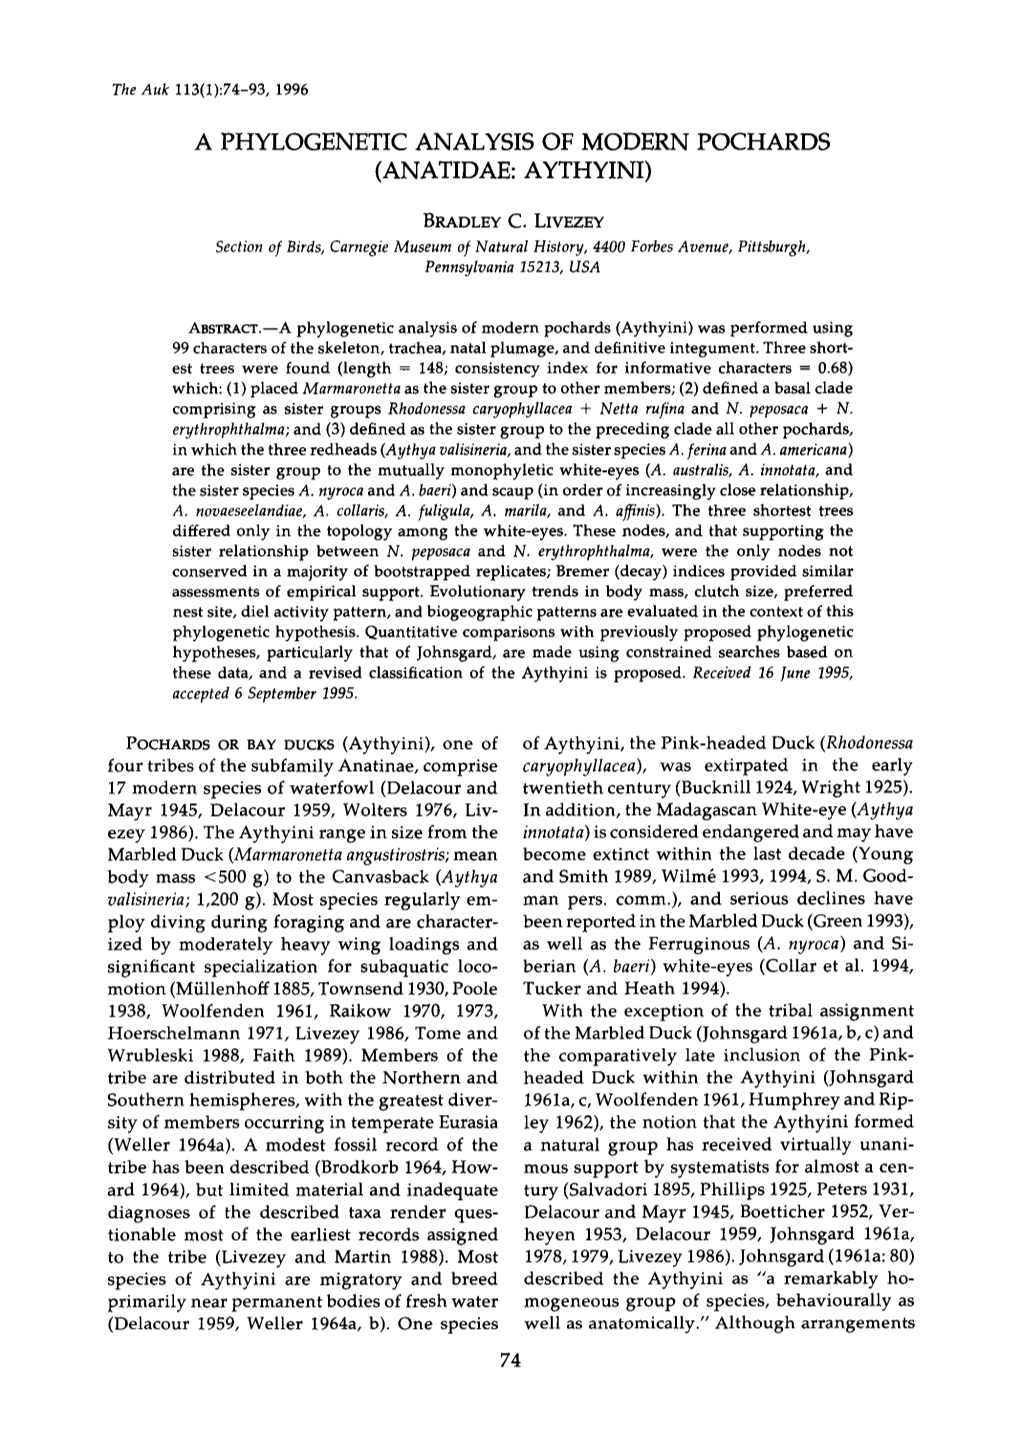 A Phylogenetic Analysis of Modern Pochards (Anatidae: Aythyini)